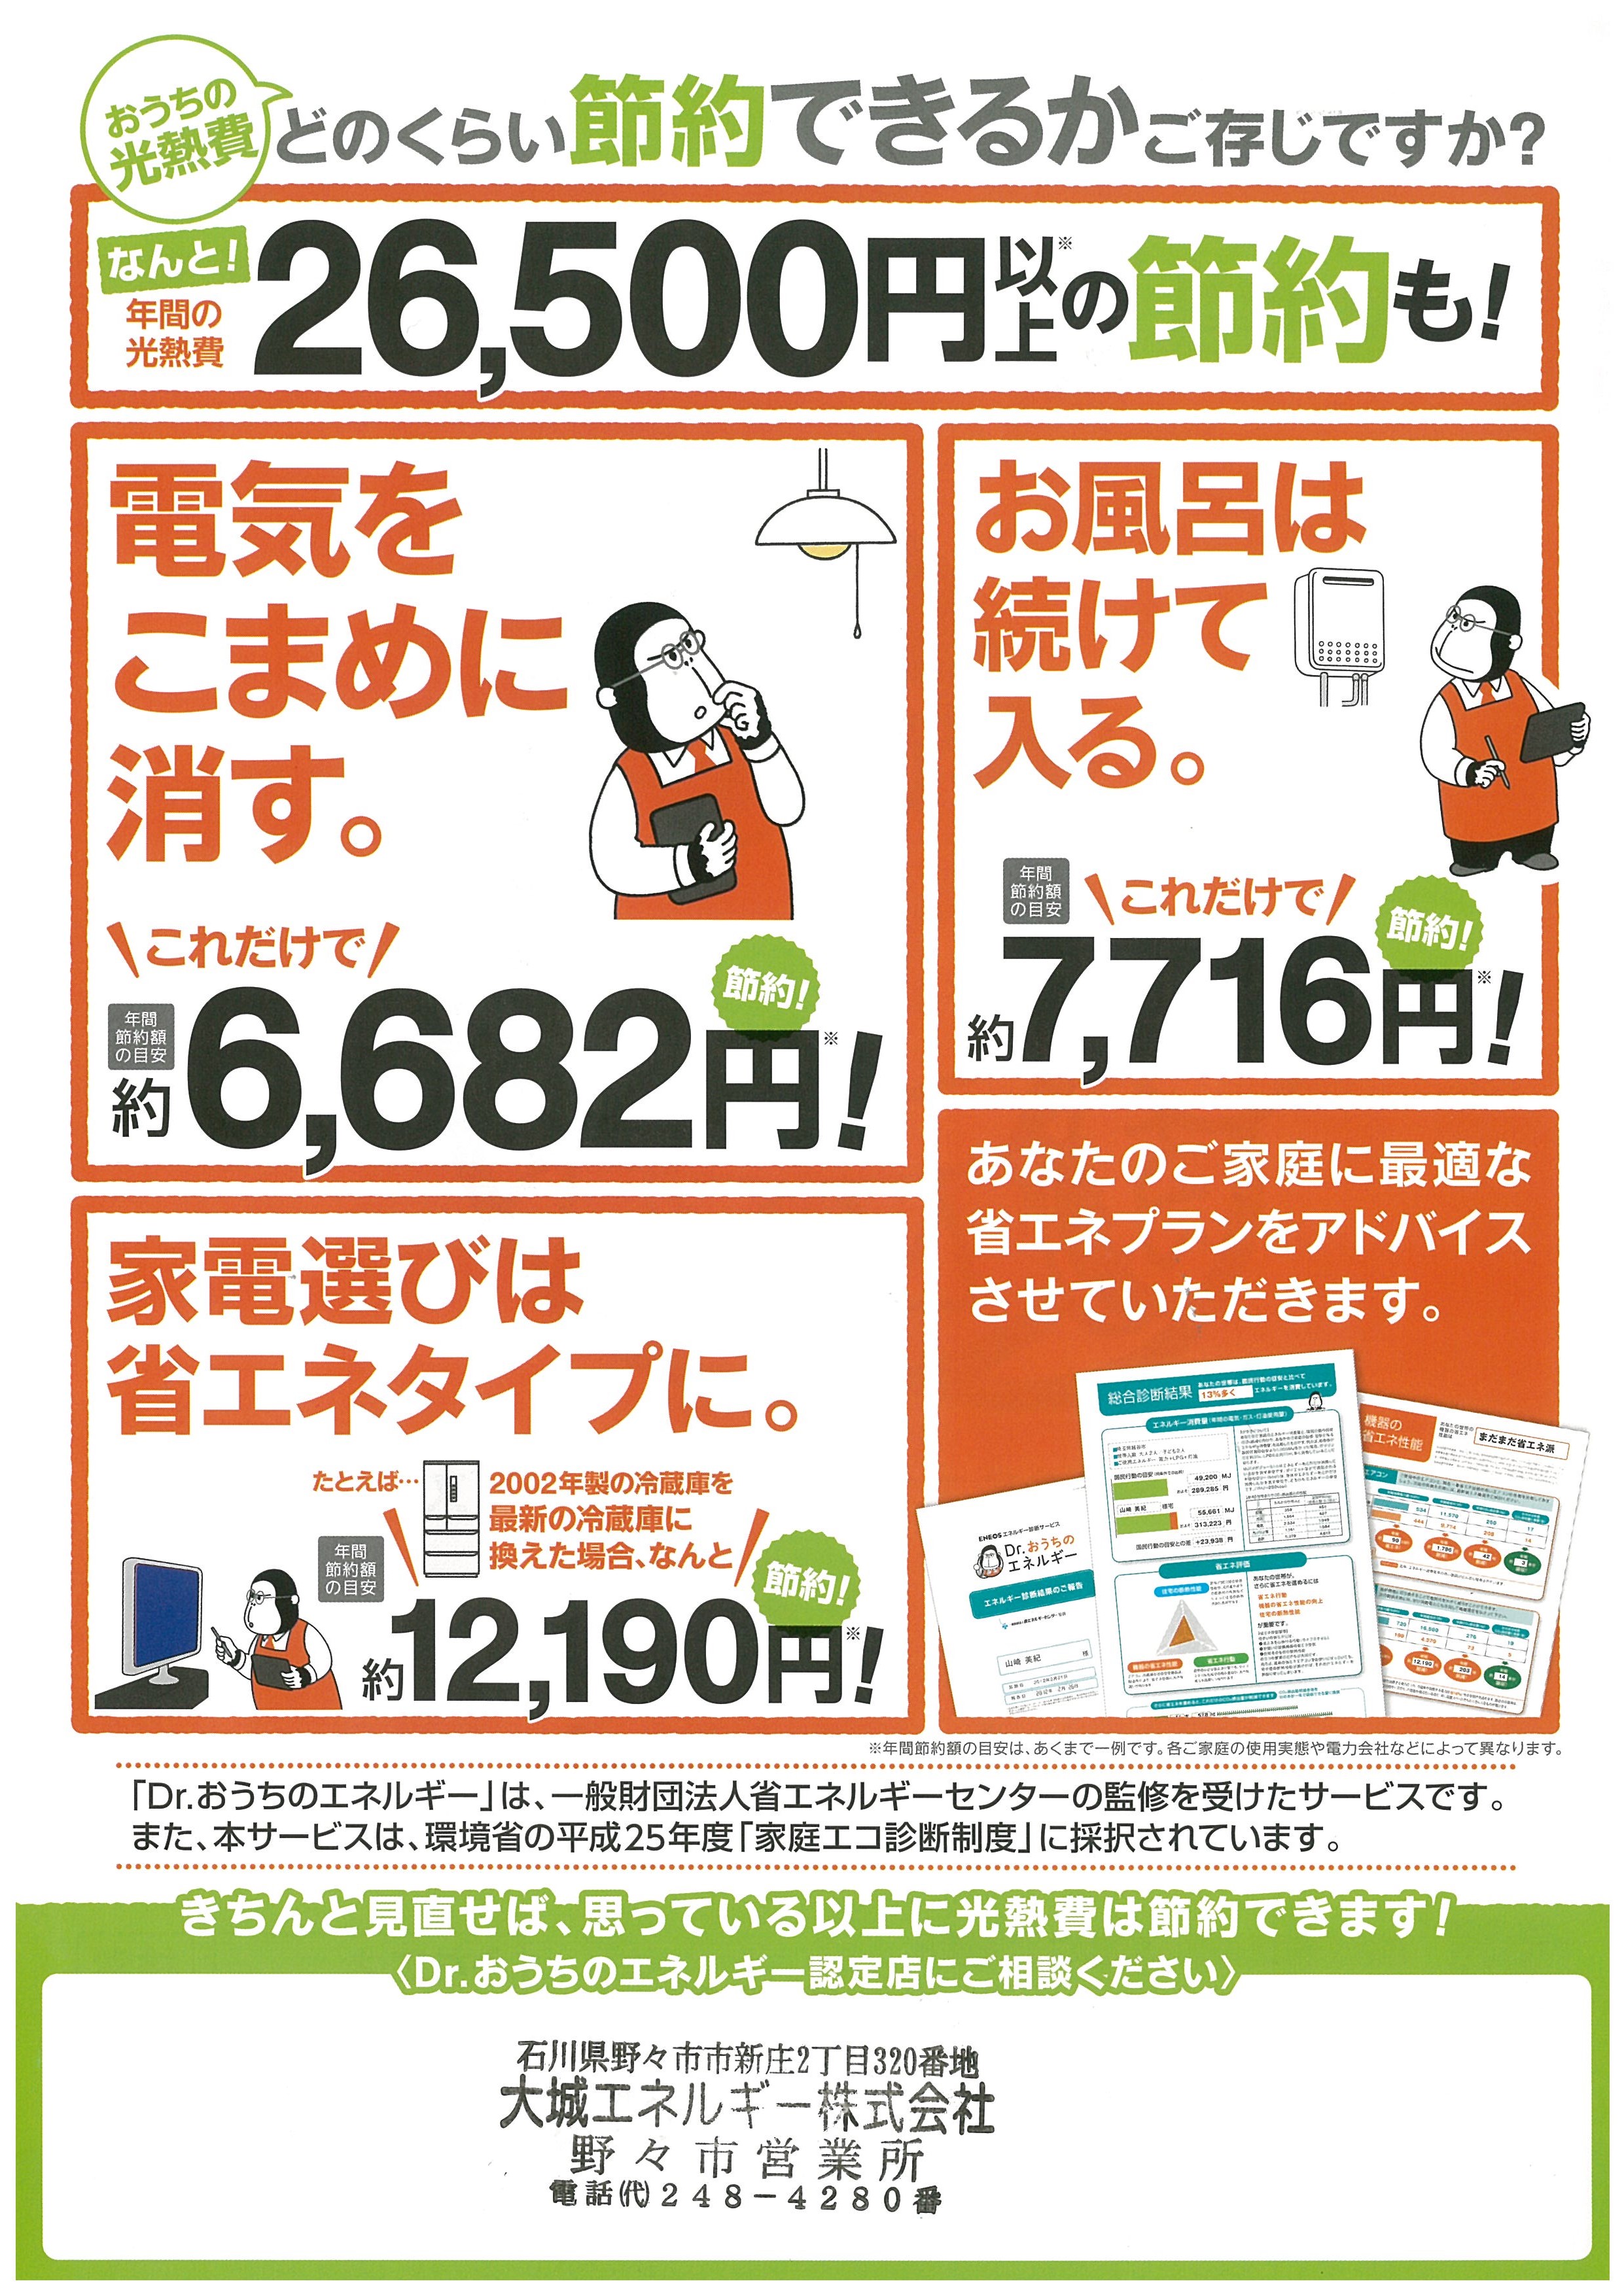 https://www.lixil-reformshop.jp/shop/SC00182004/2015/01/22/20150122100514-0001.jpg